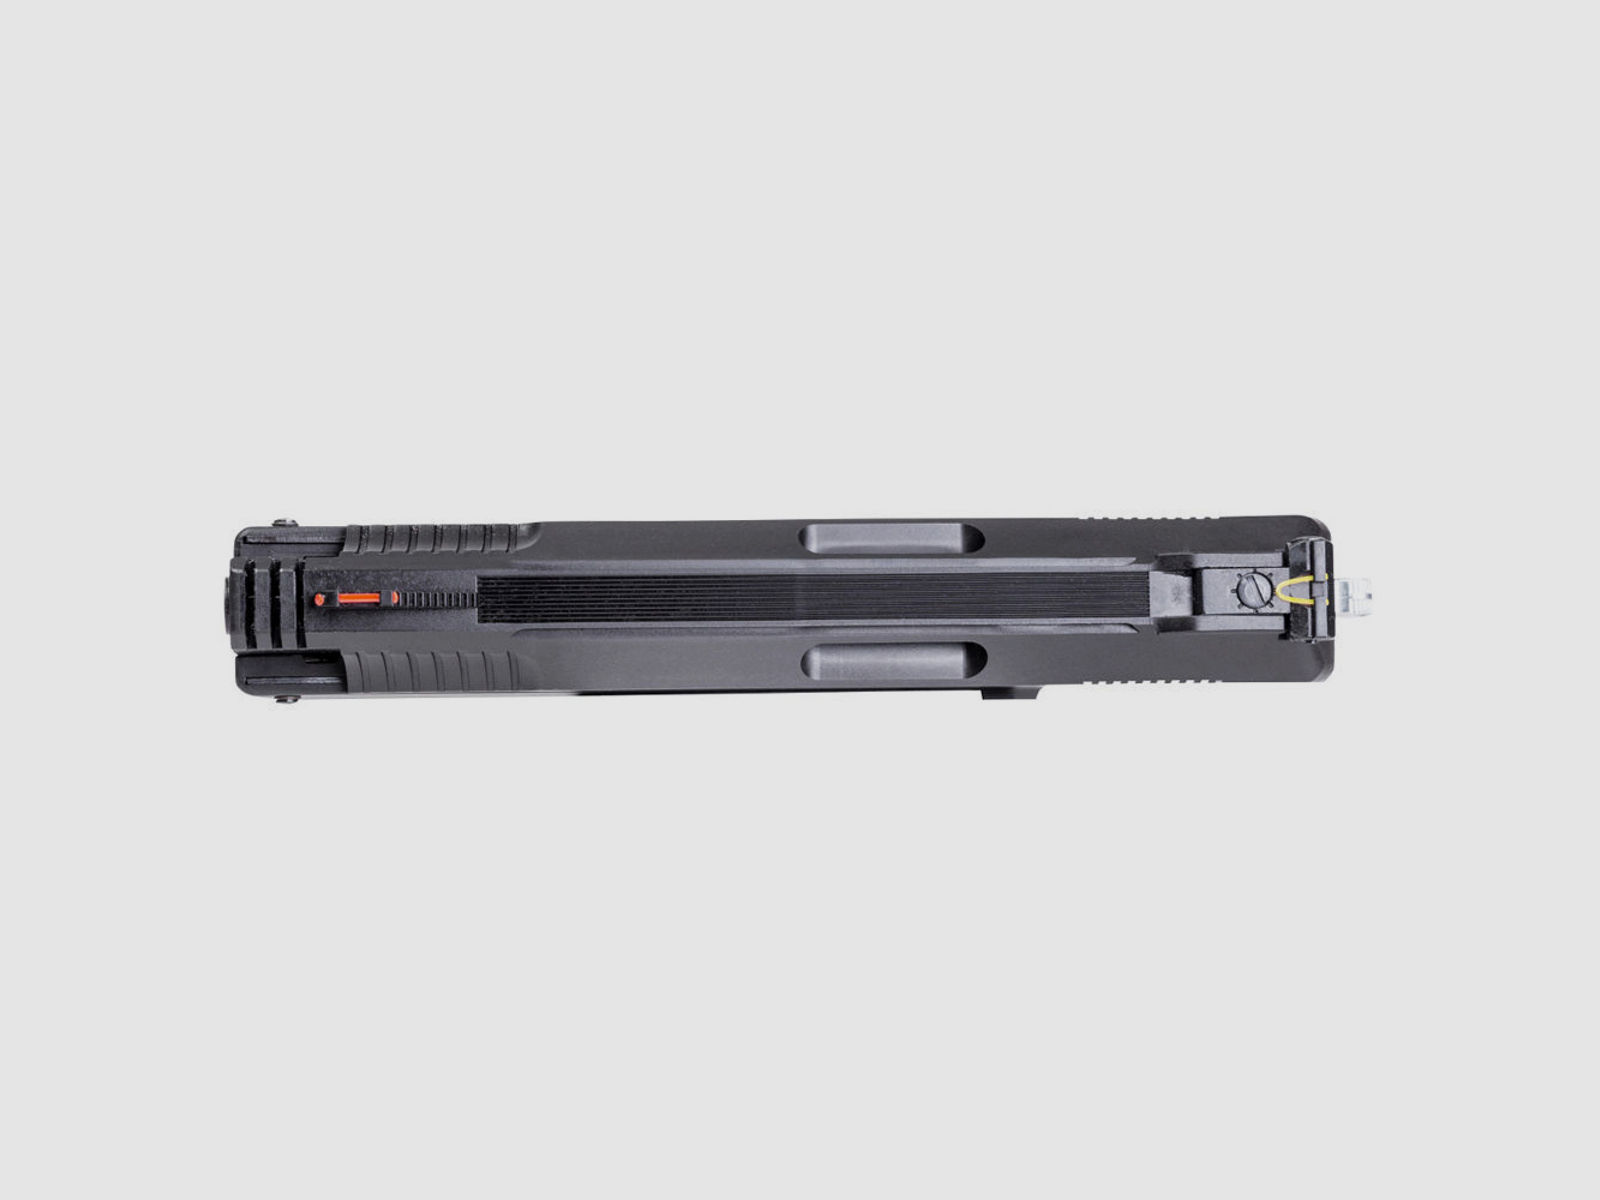 Weihrauch HW 40 PCA Luftdruckpistole 4,5mm